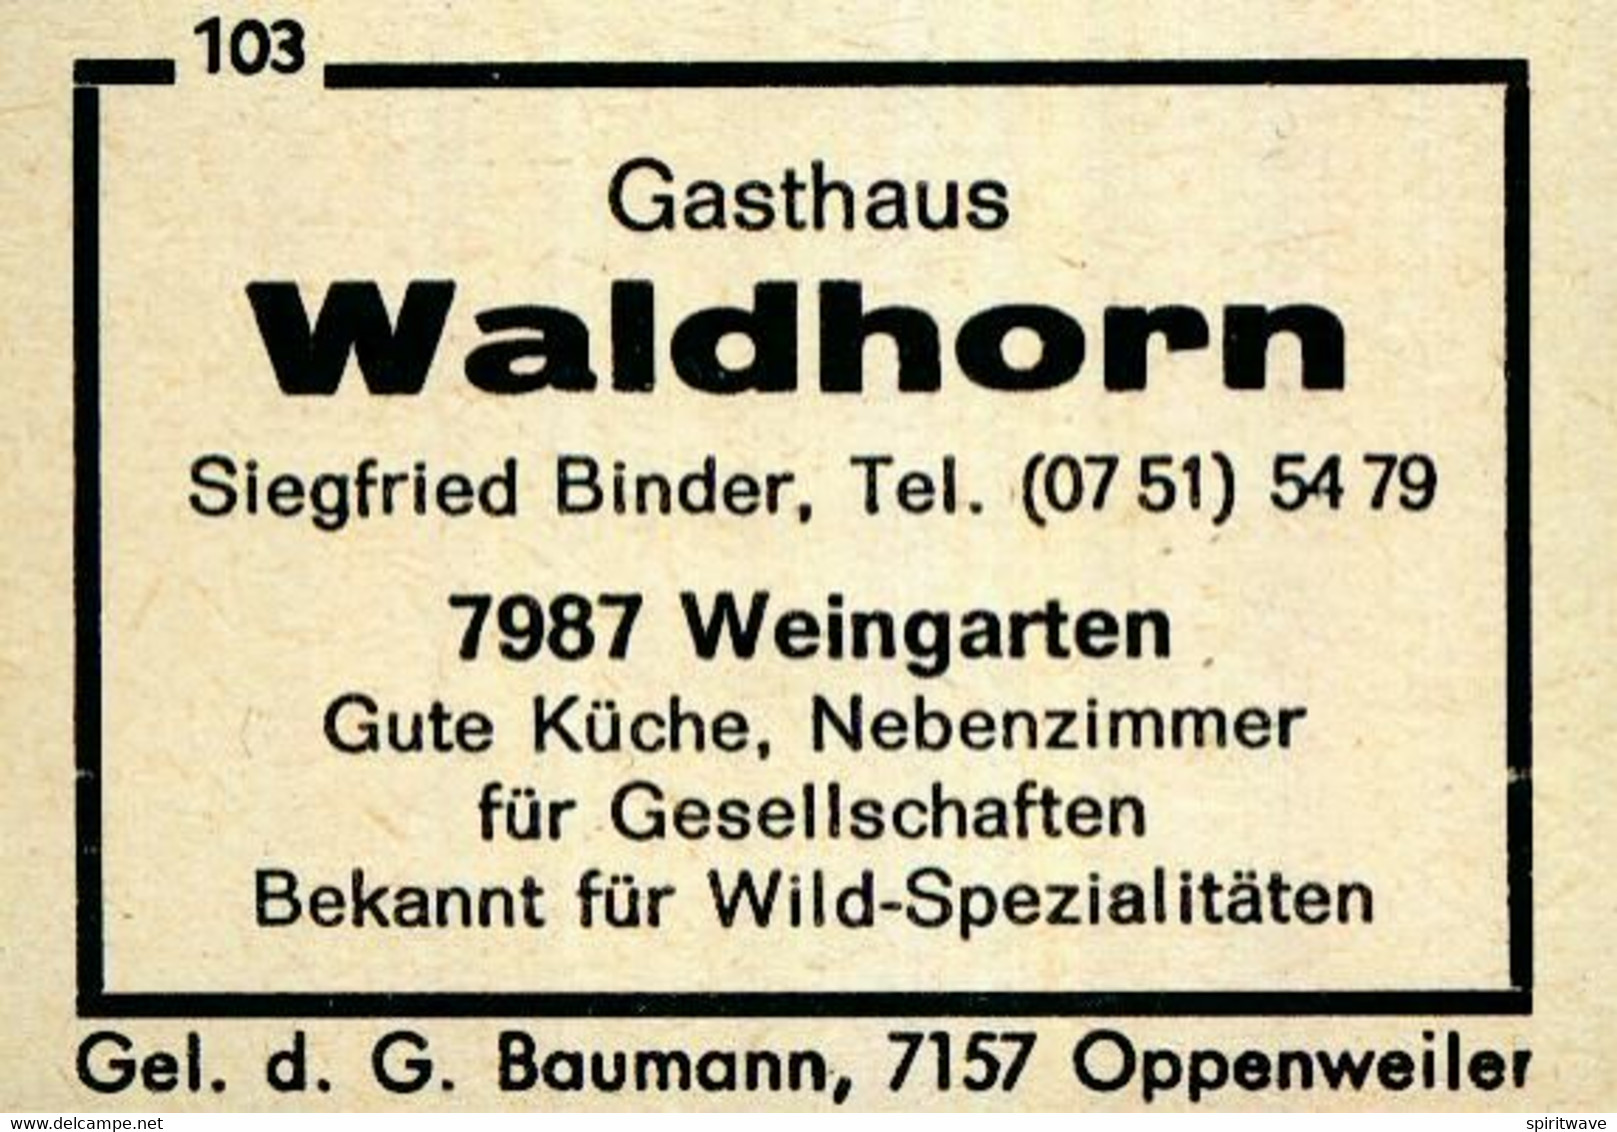 Matchbox labels - 1 altes Gasthausetikett, Gasthaus Waldhorn